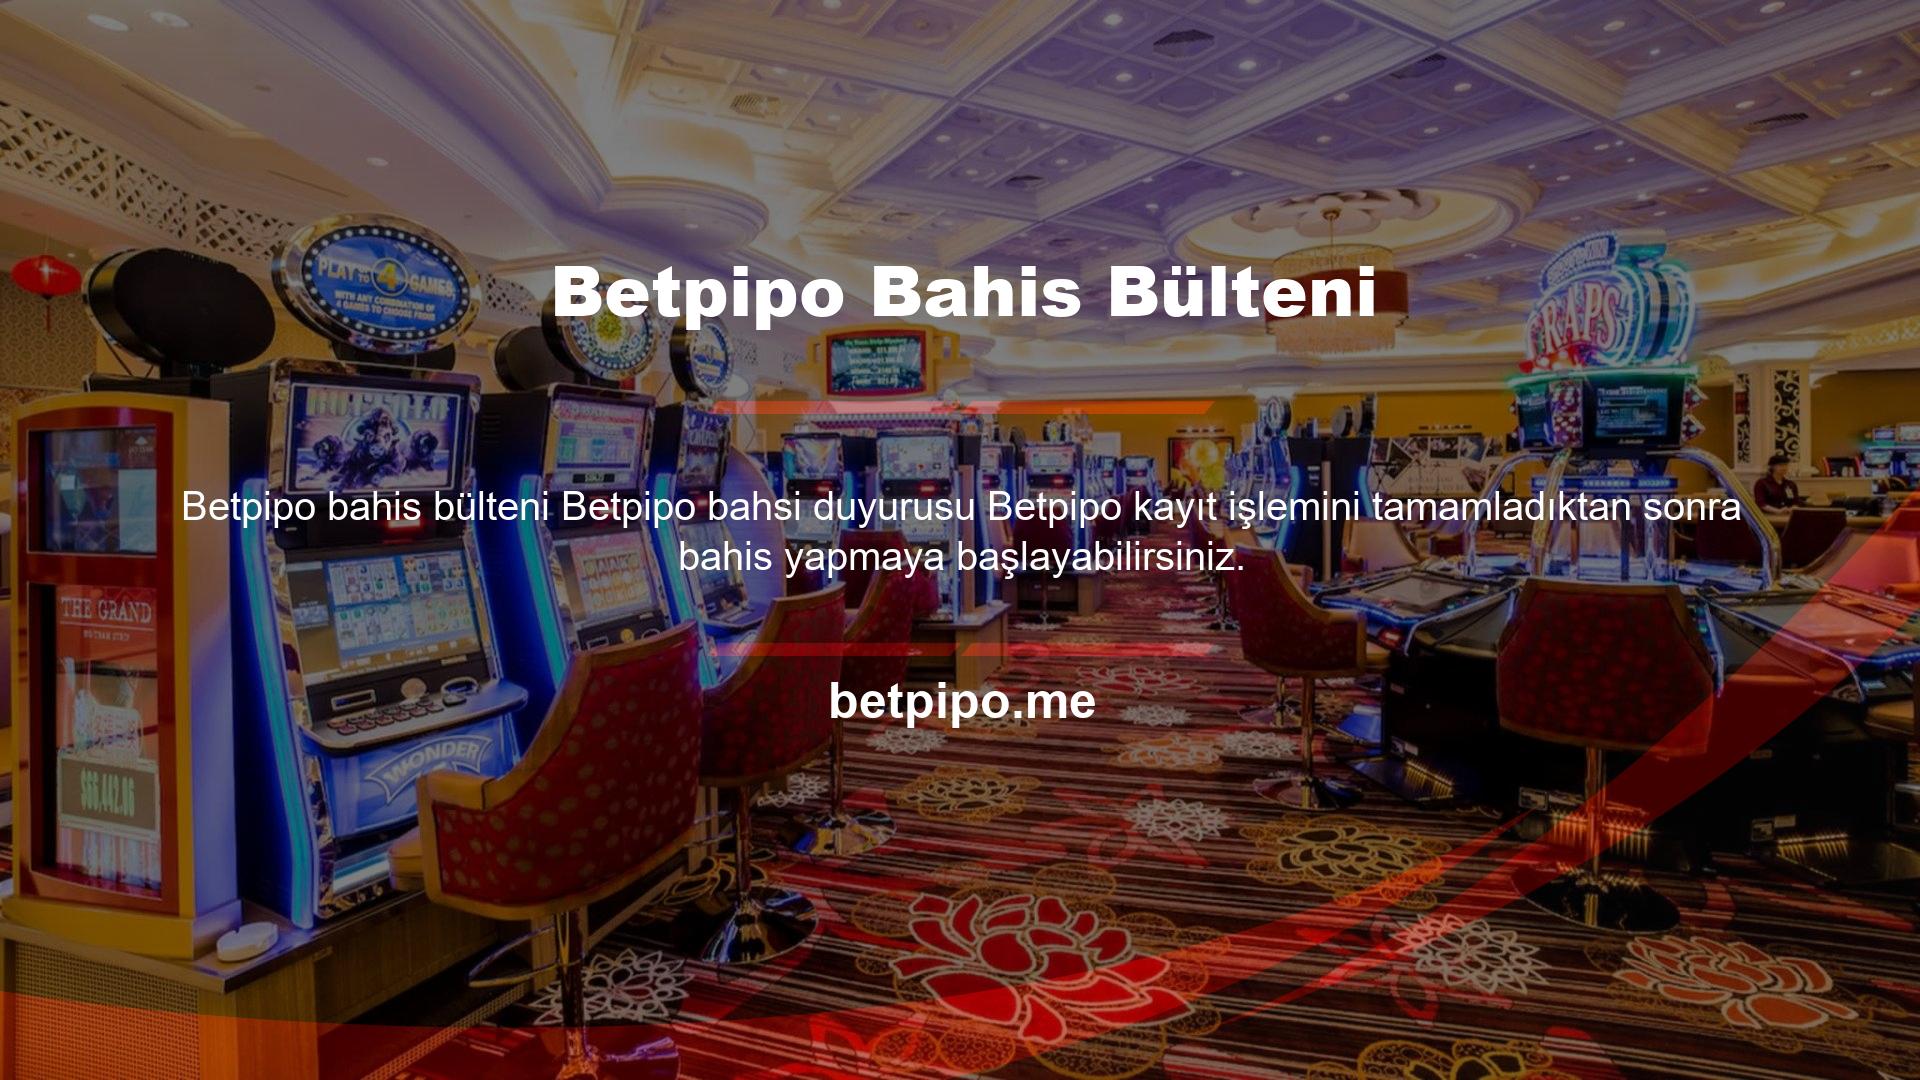 Betpipo bahis sitesi, bahis oynamak isteyenler için çok çeşitli bahis uygulamaları sunmaktadır